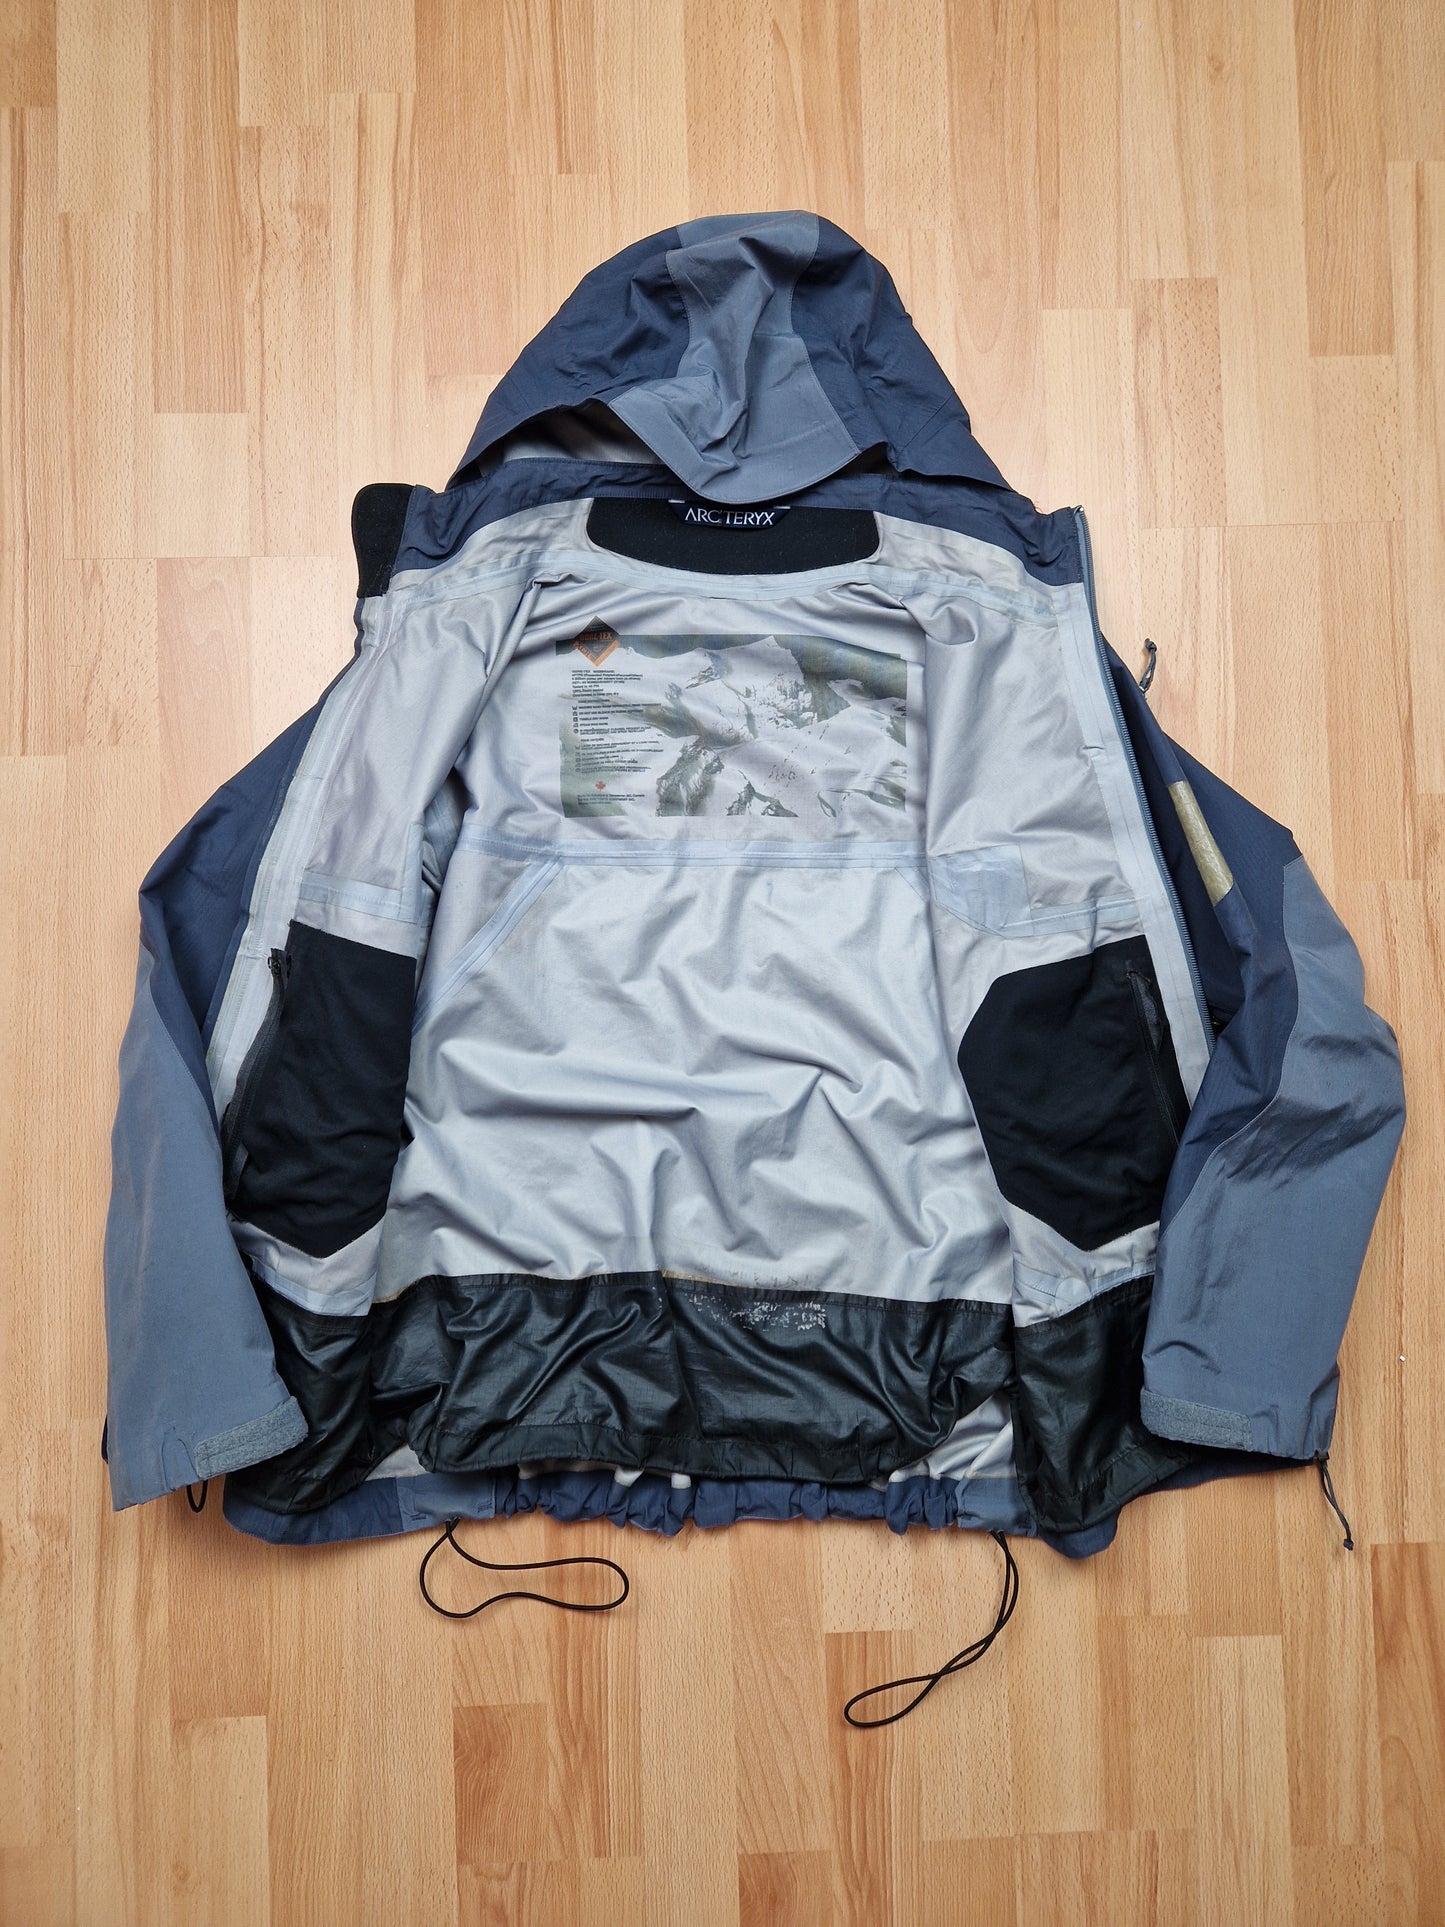 Vintage Arc'teryx SV Gore-tex Jacket (L)